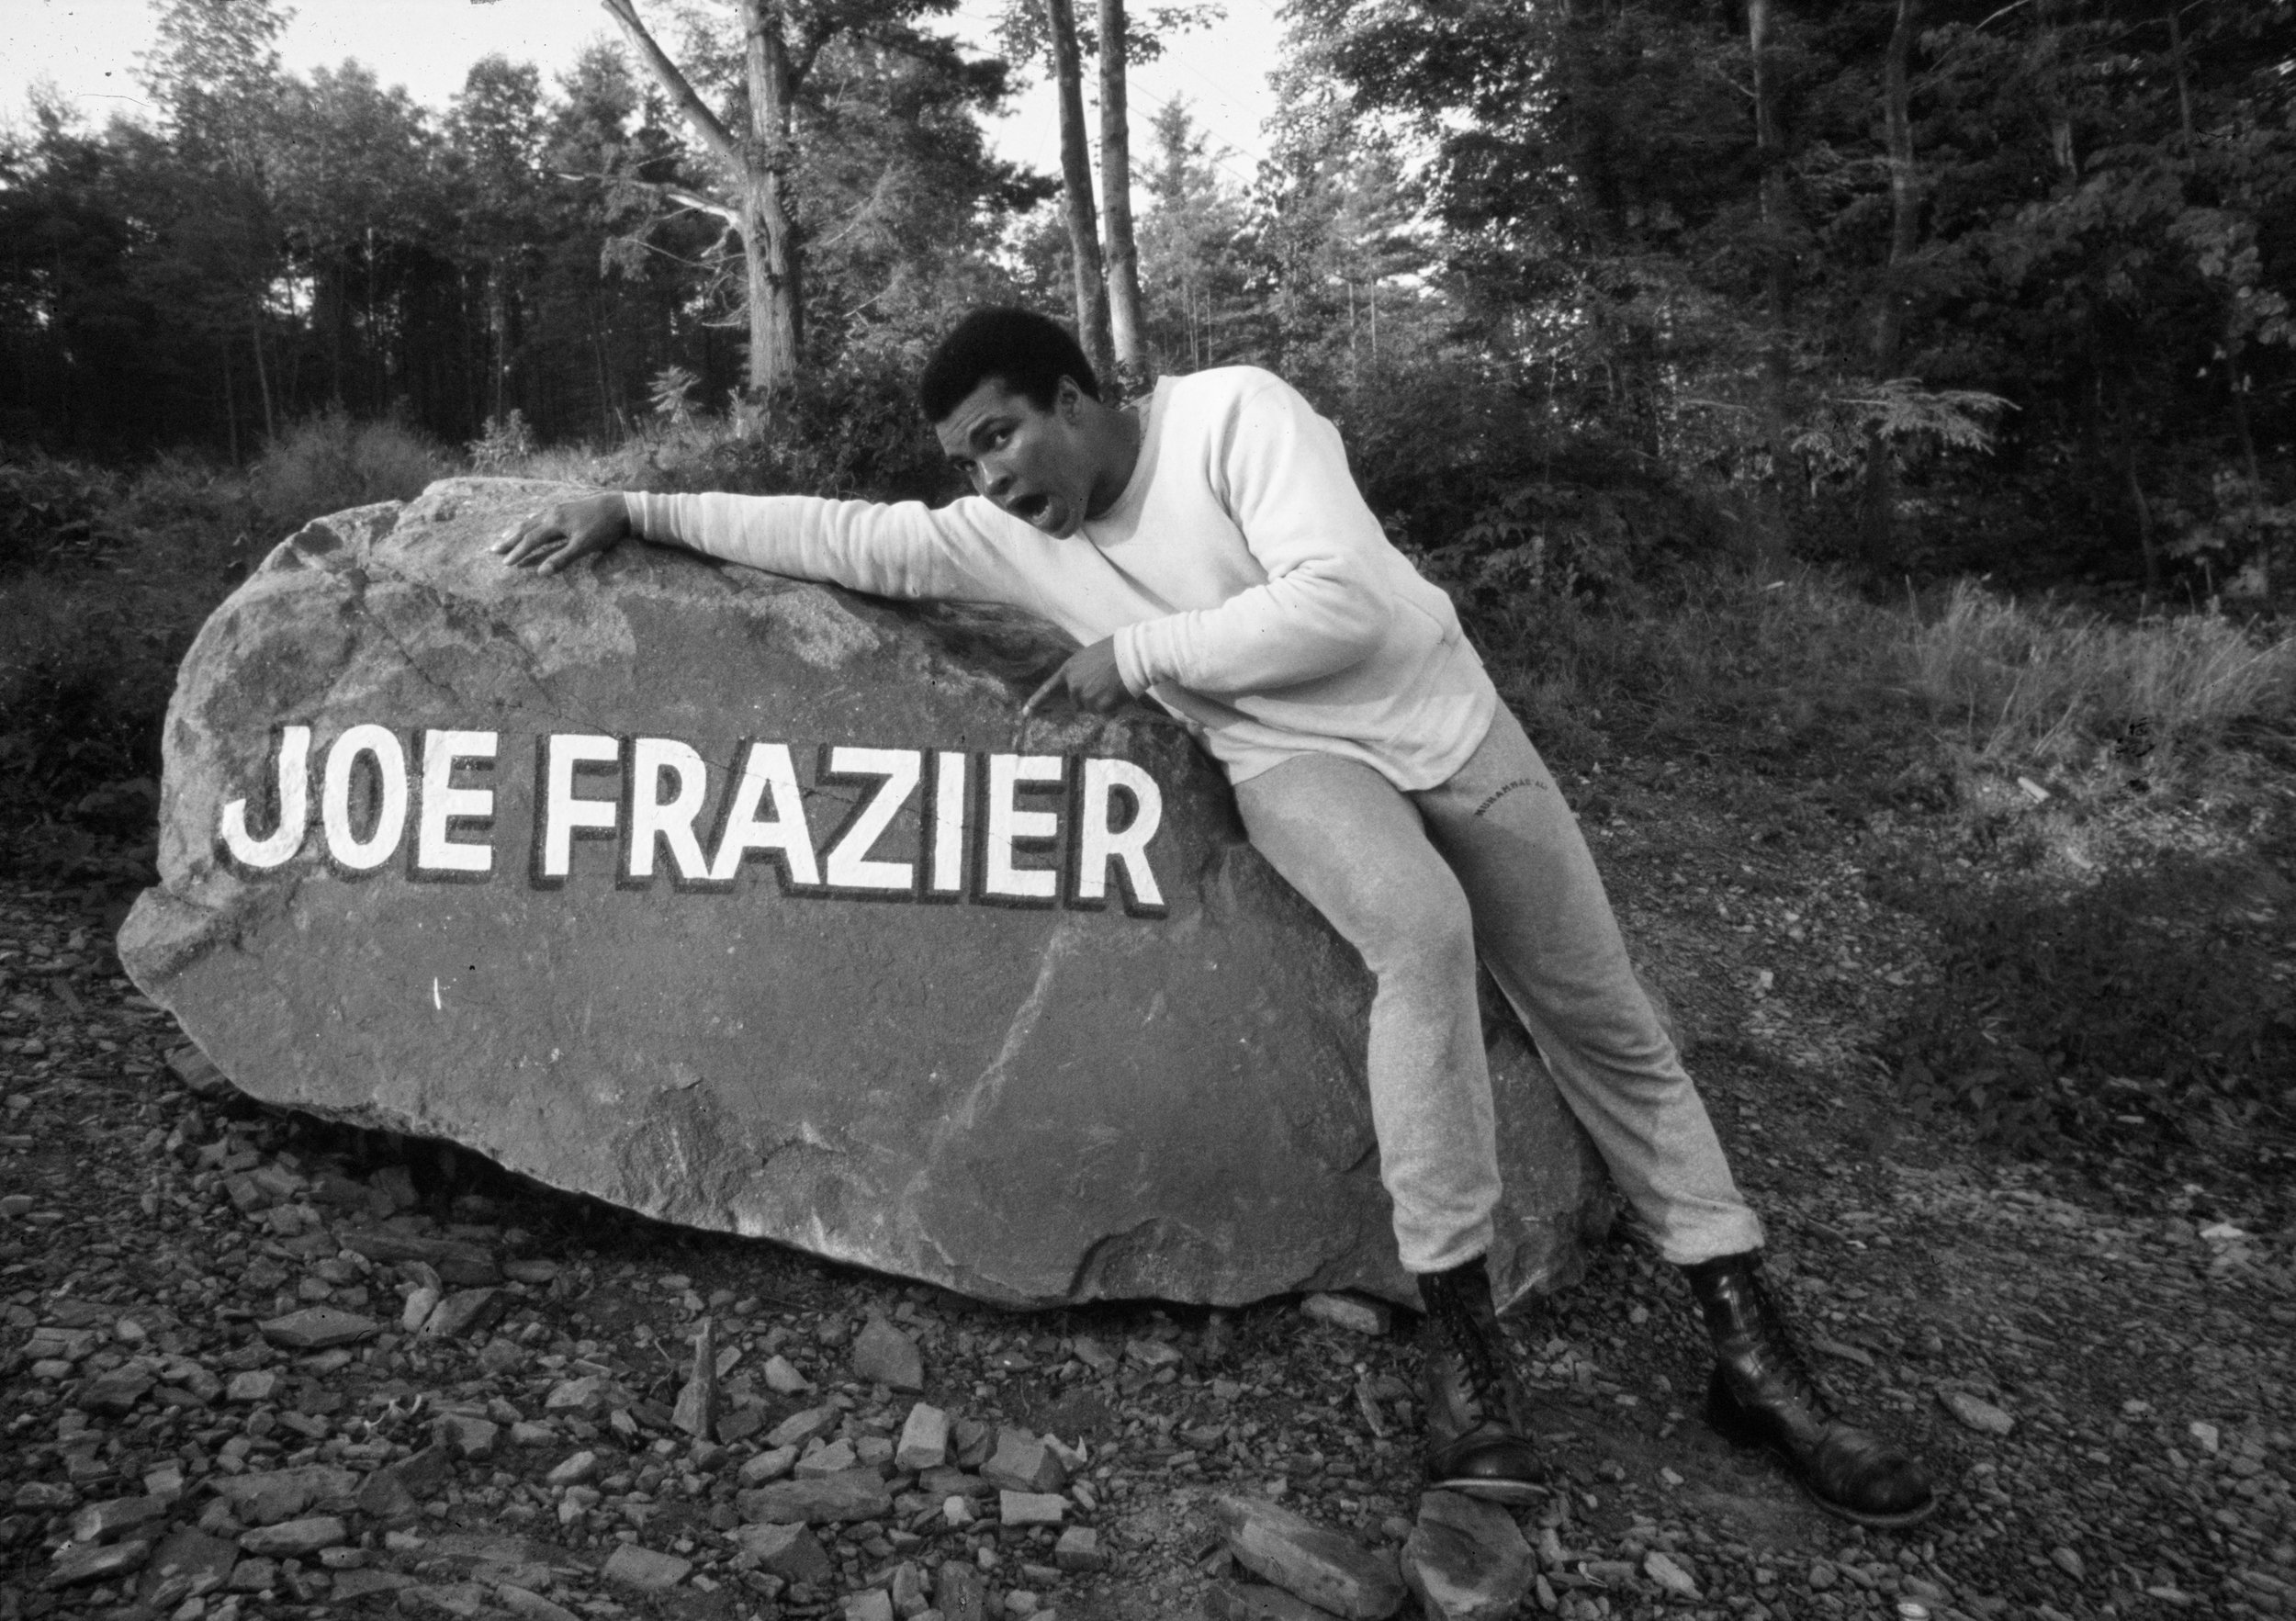  Ali Leaning on Joe Frazier Boulder 